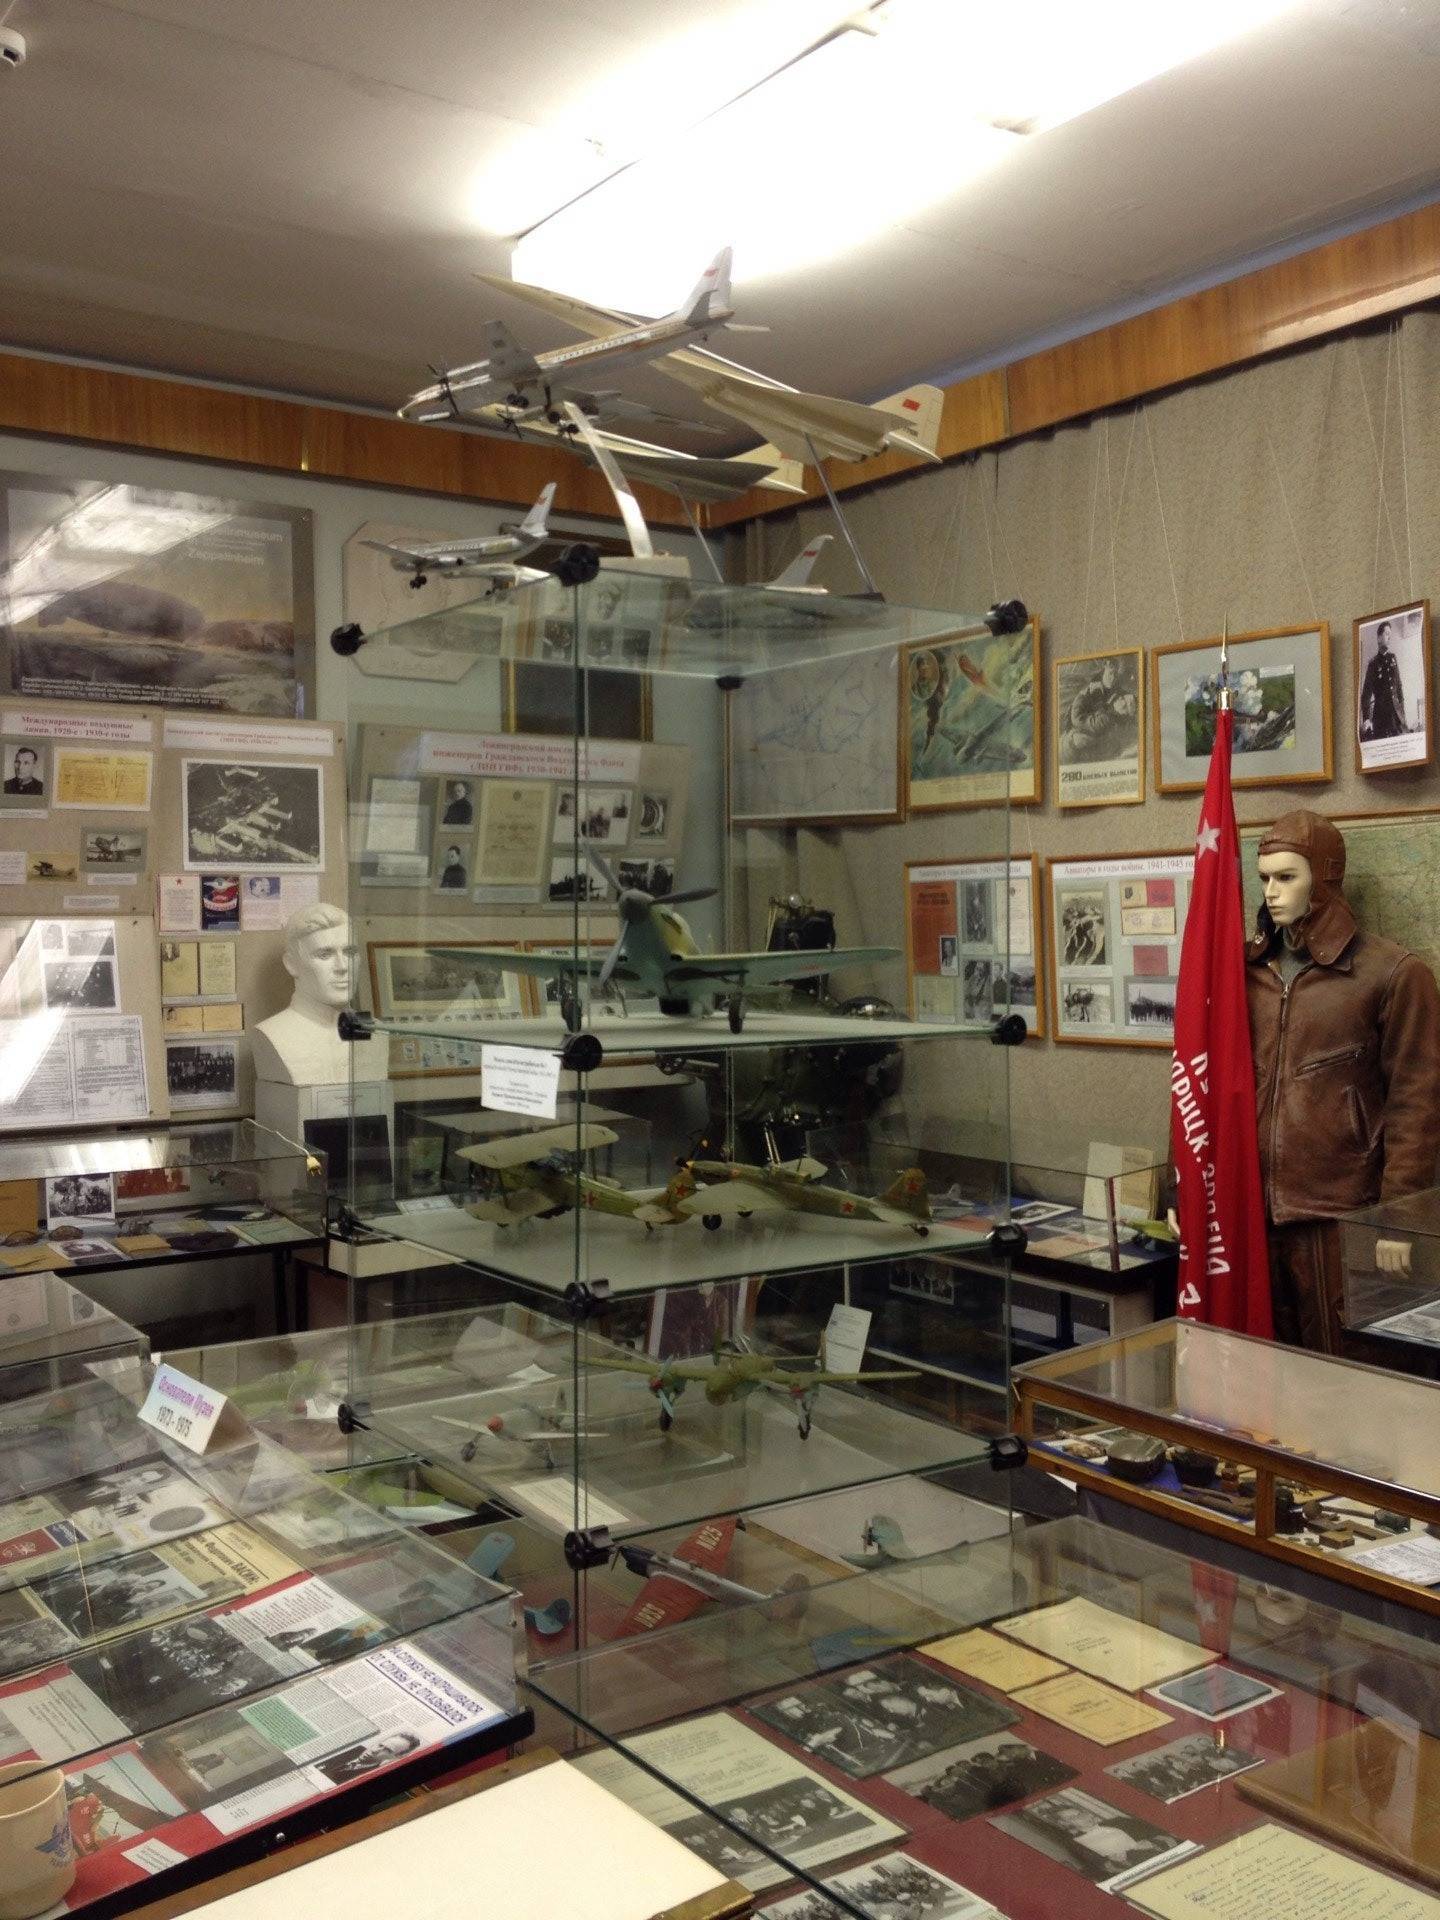 Музей космонавтики и ракетной техники им. глушко, петропавловская крепость, санкт-петербург